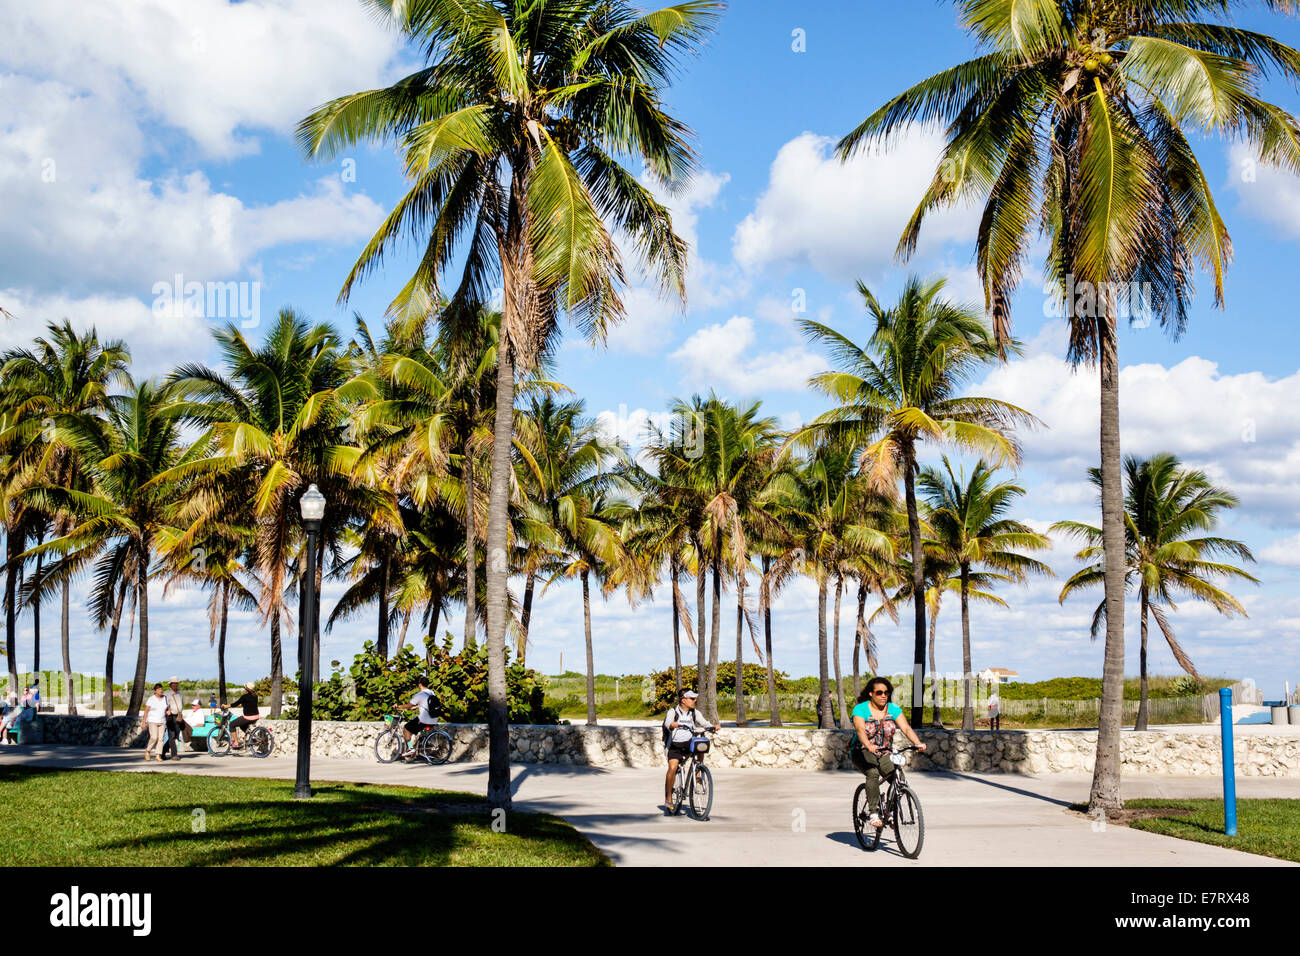 Miami Beach Florida,Lummus Park,Serpentine Trail,palmiers,piste cyclable,femme femmes,vélo,vélo,vélo,vélo,équitation,vélo,pilote,bon temps, Banque D'Images